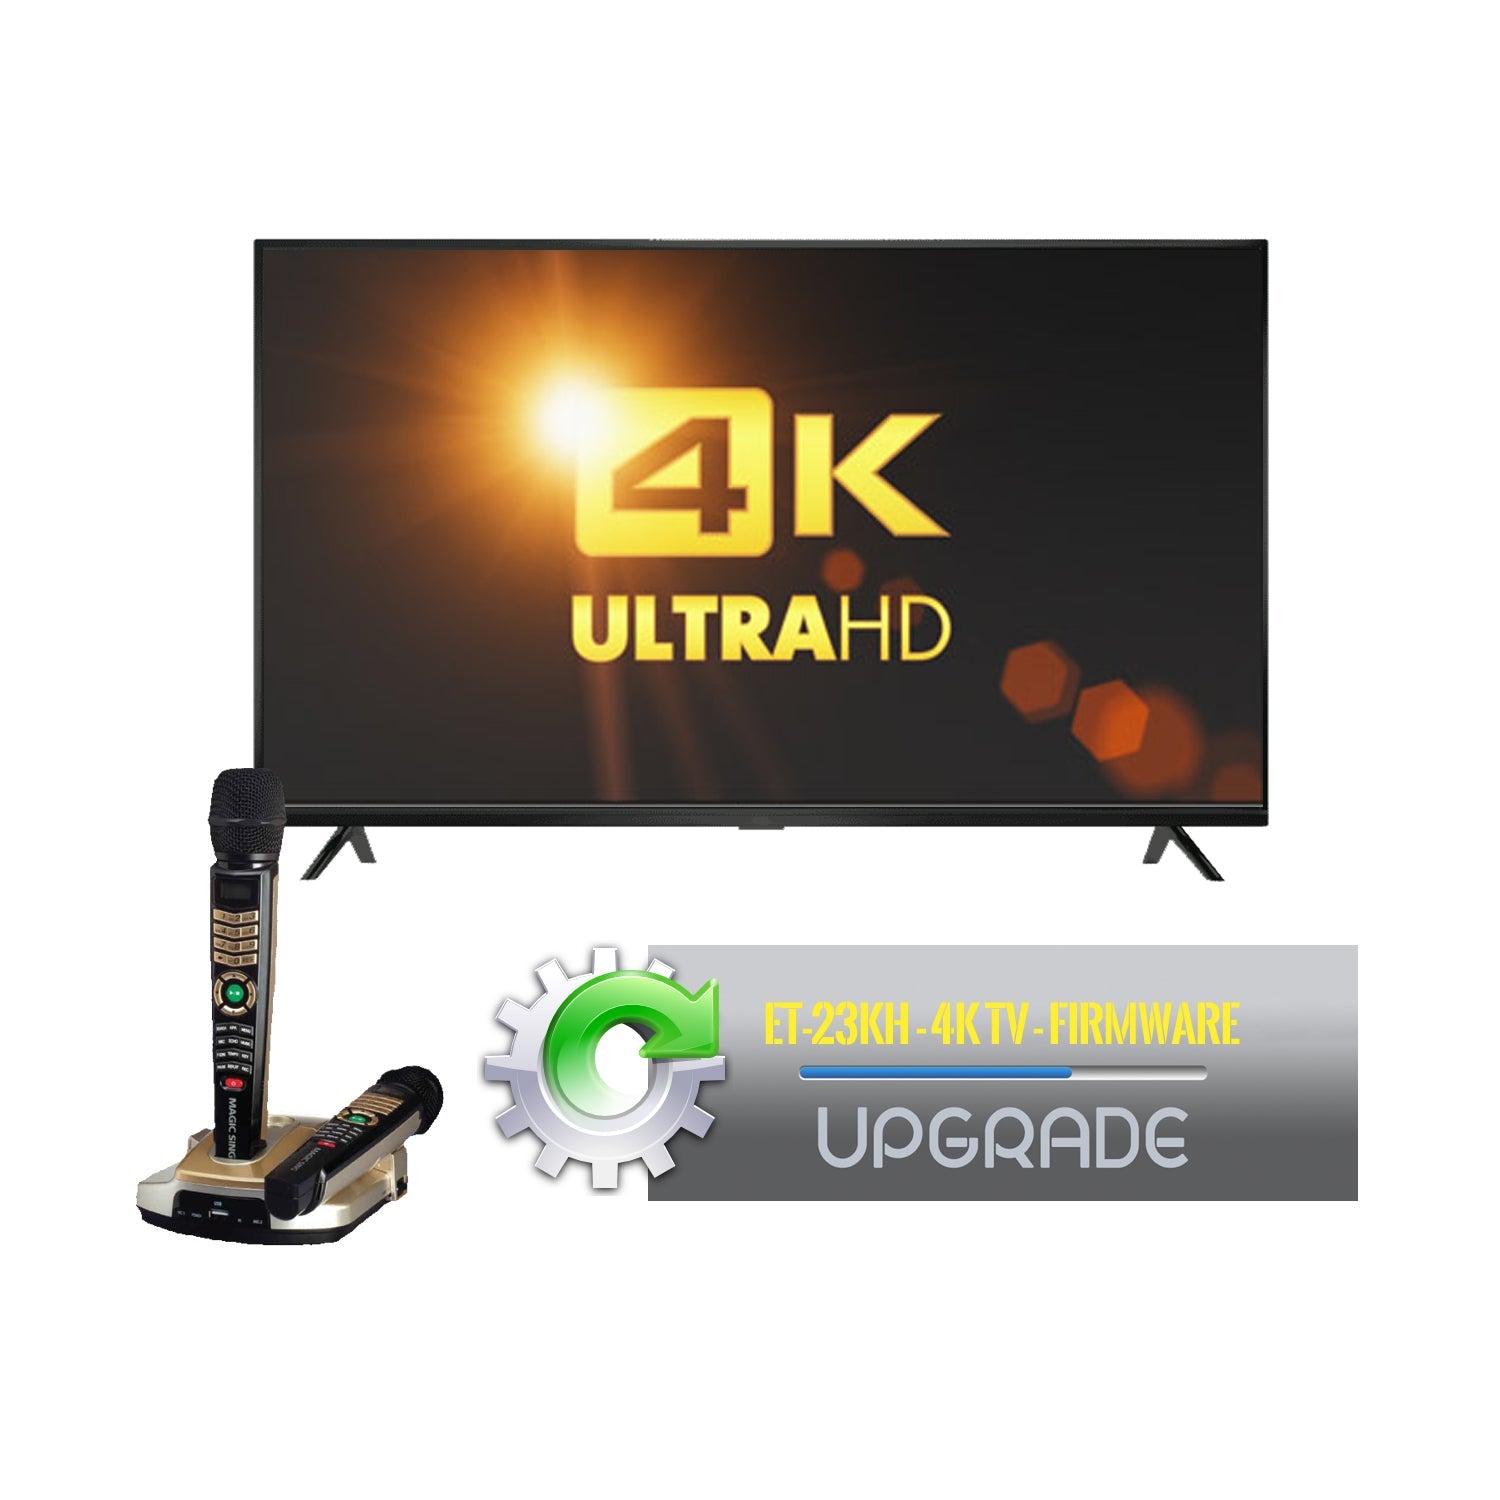 Firmware Upgrade for Magic Sing ET-23KH (4K TV) - Karaoke Home Entertainment